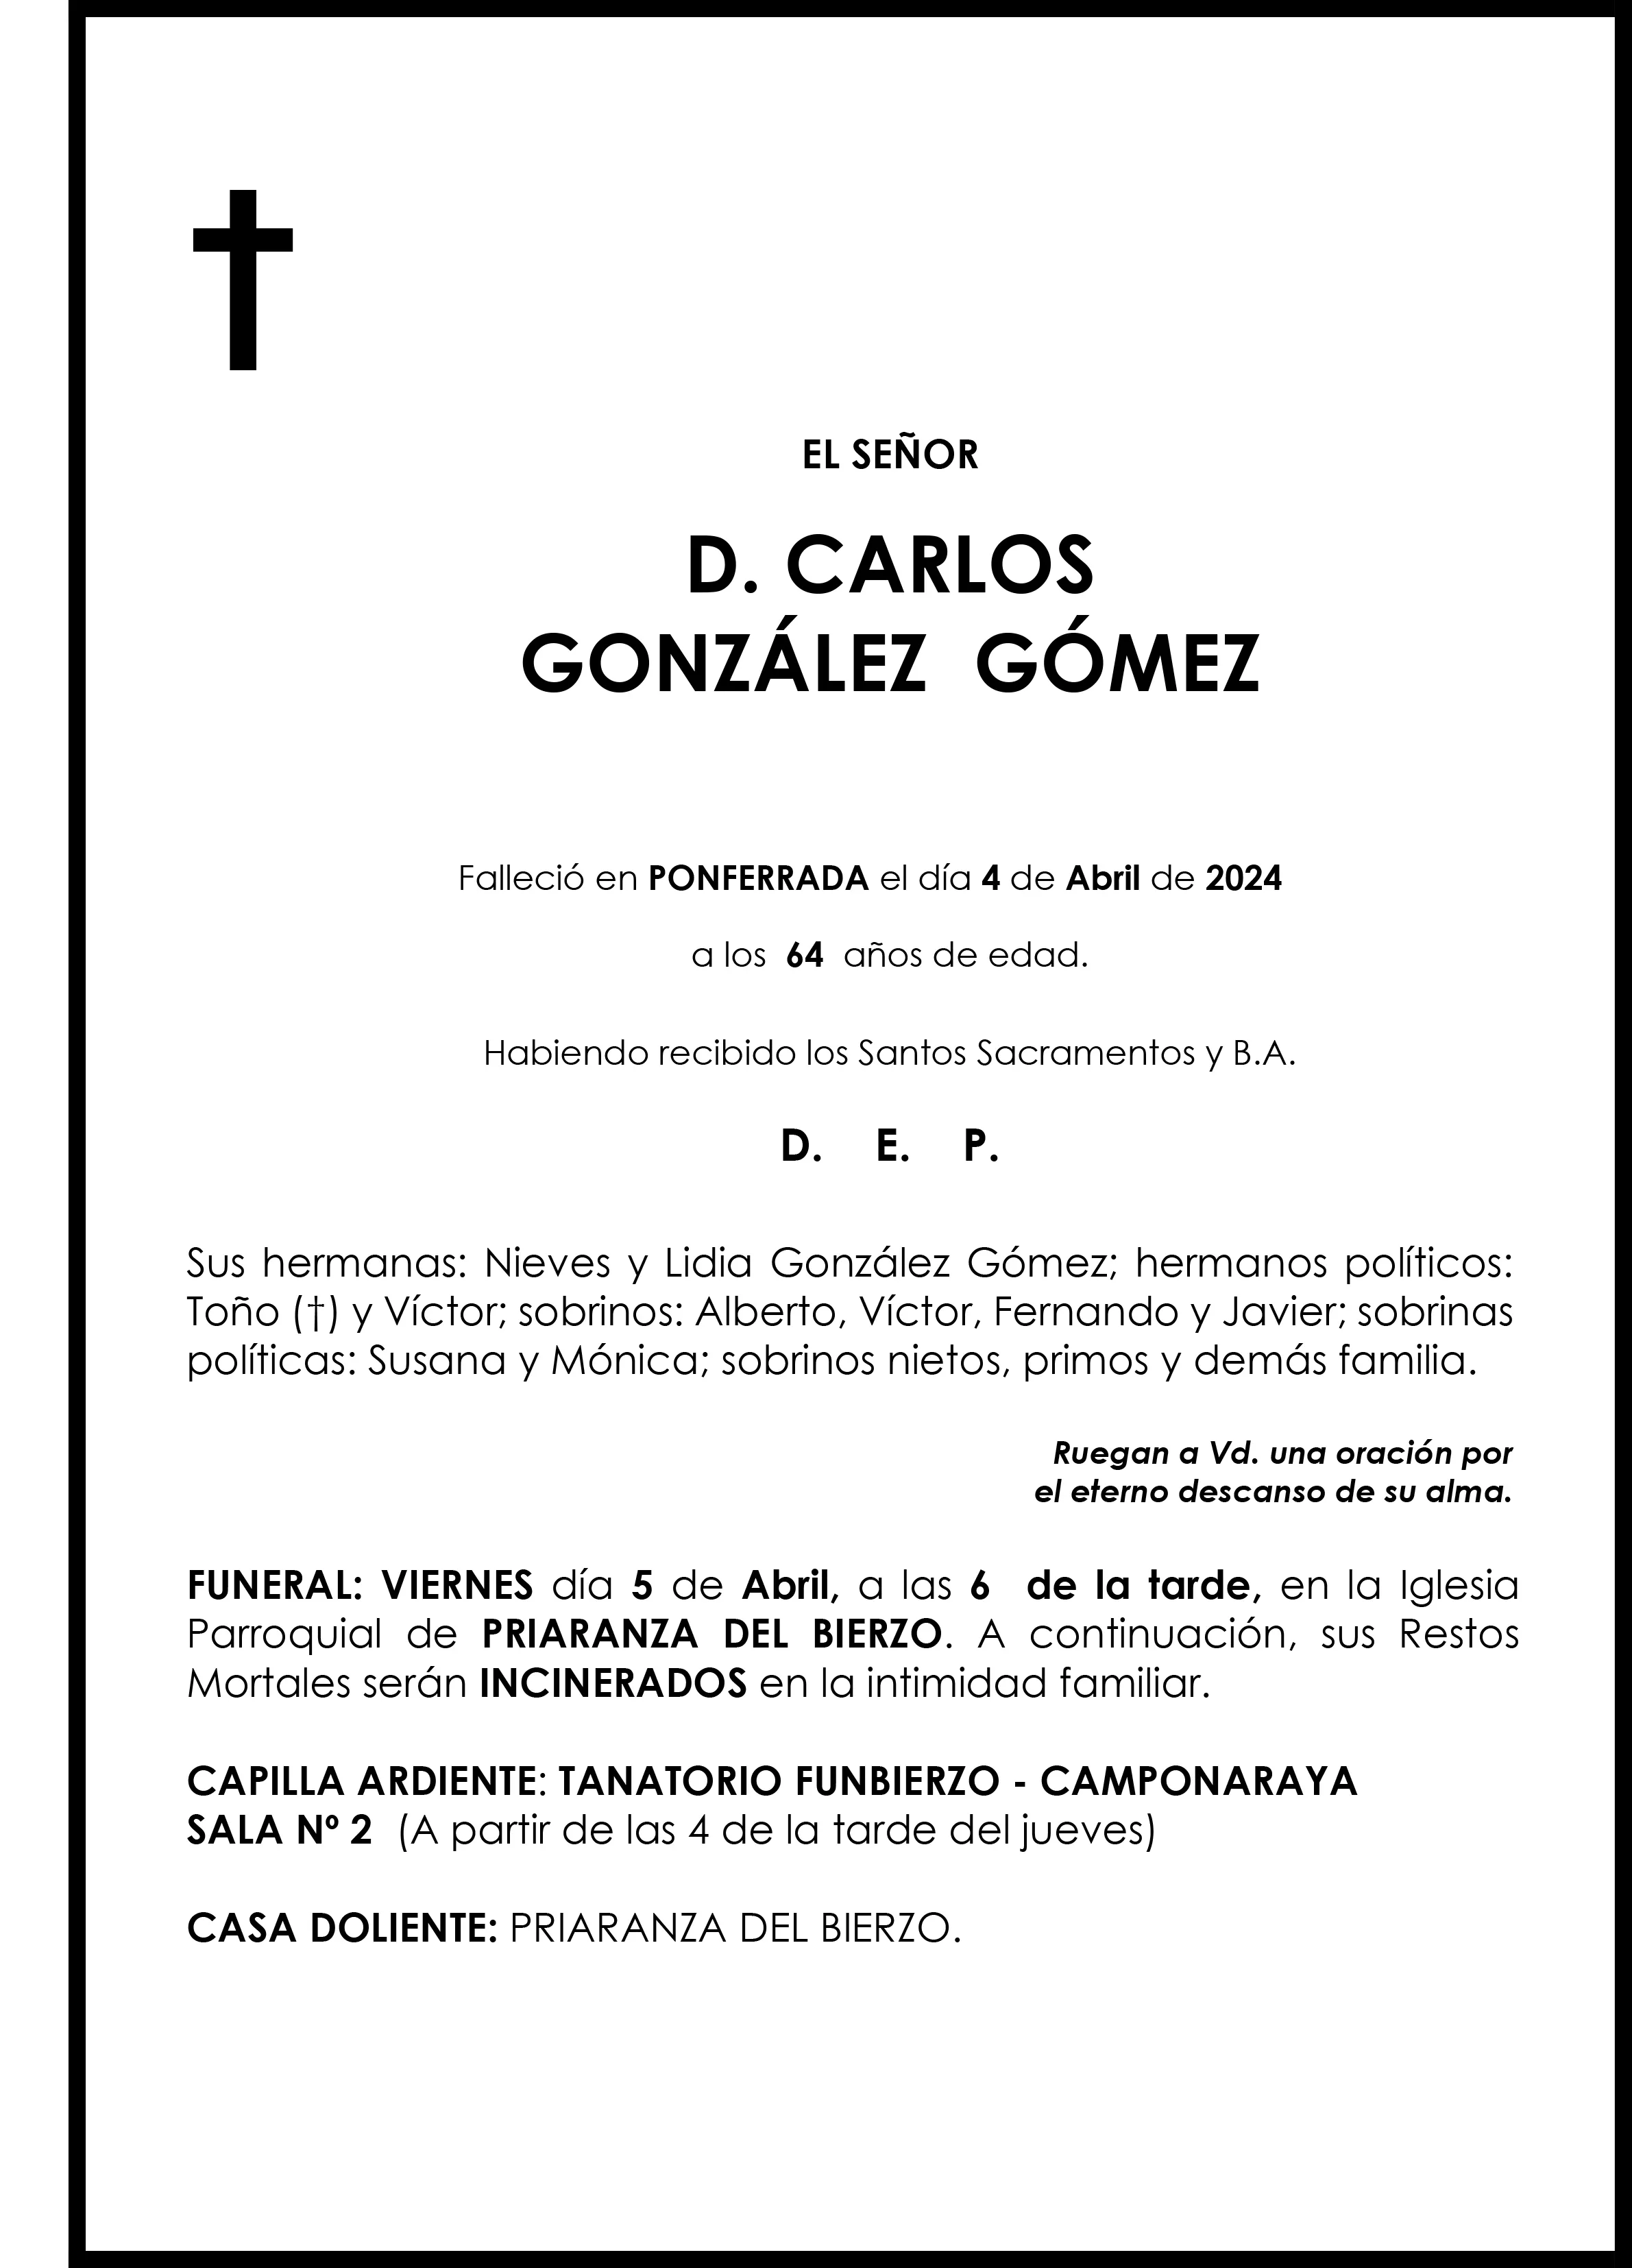 CARLOS GONZALEZ GOMEZ